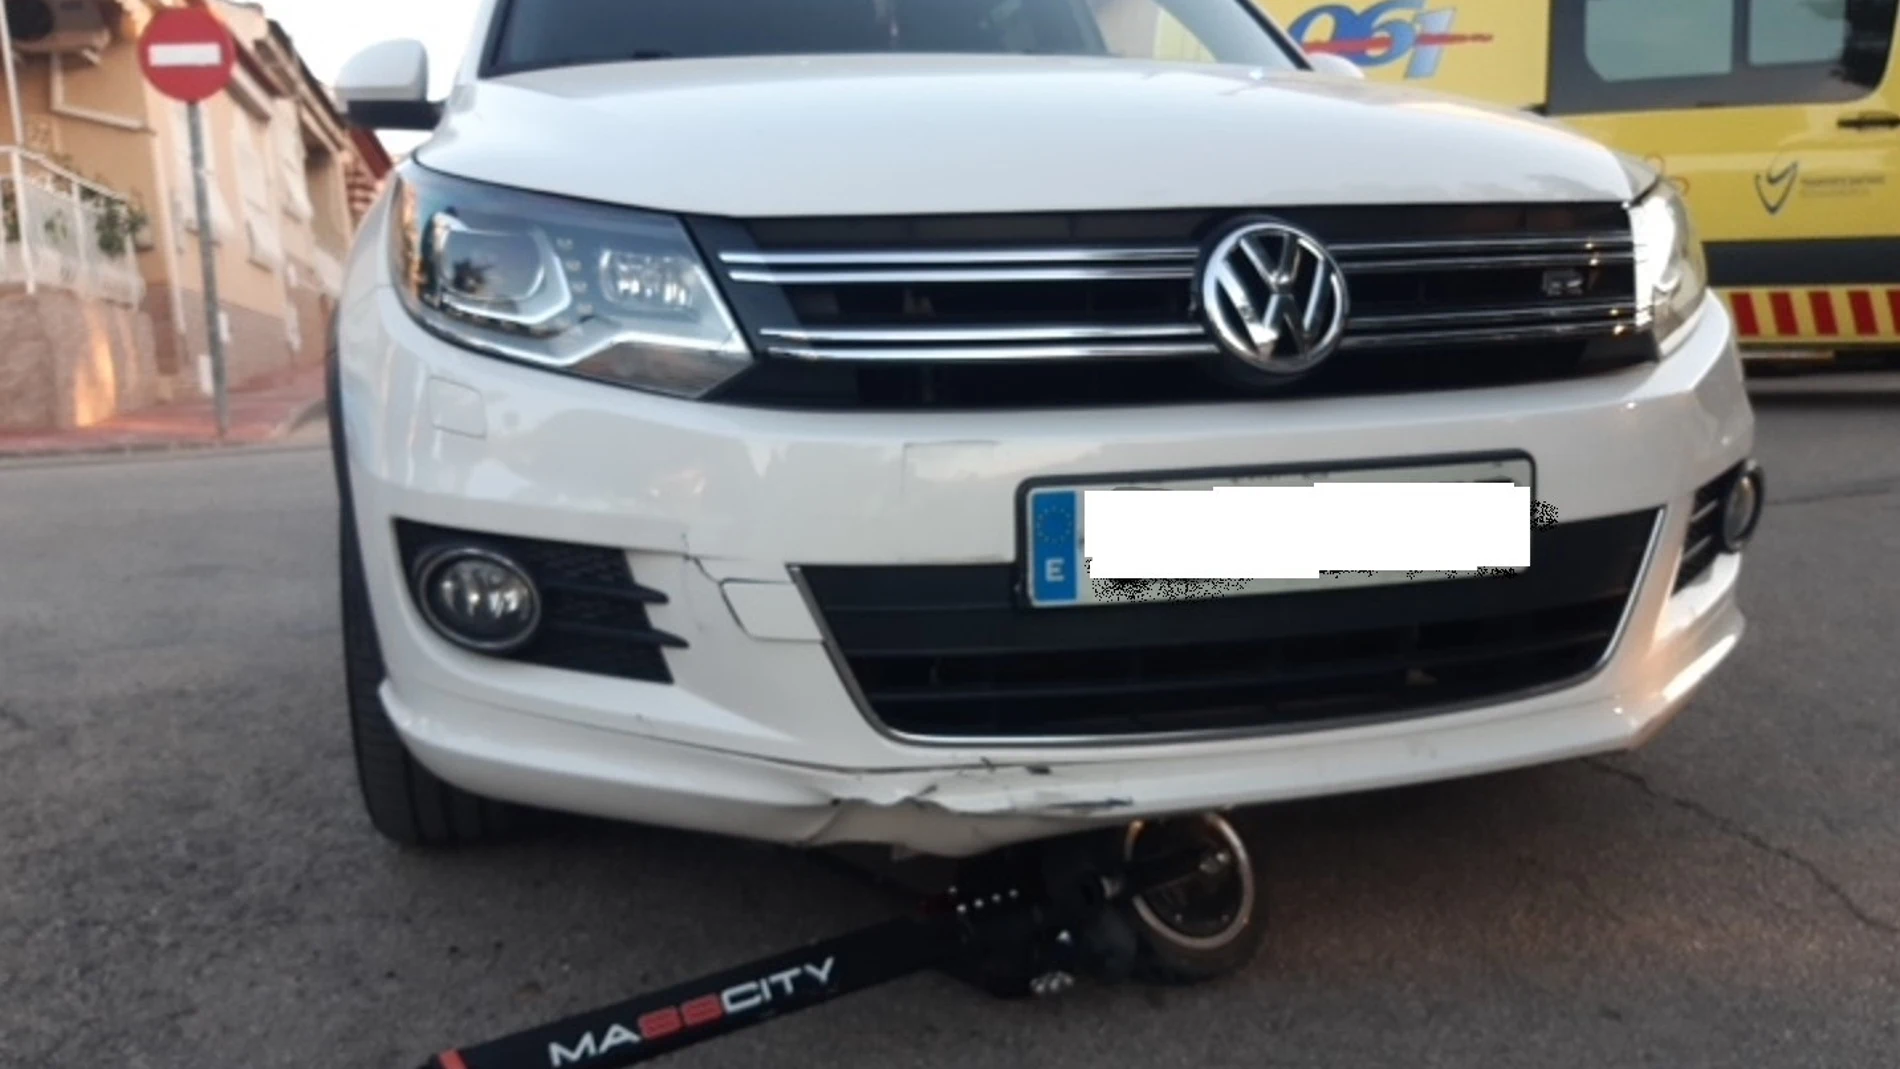 El patinete junto al vehículo contra el que ha chocado el conductor
1-1-2 REGIÓN DE MURCIA
22/03/2023